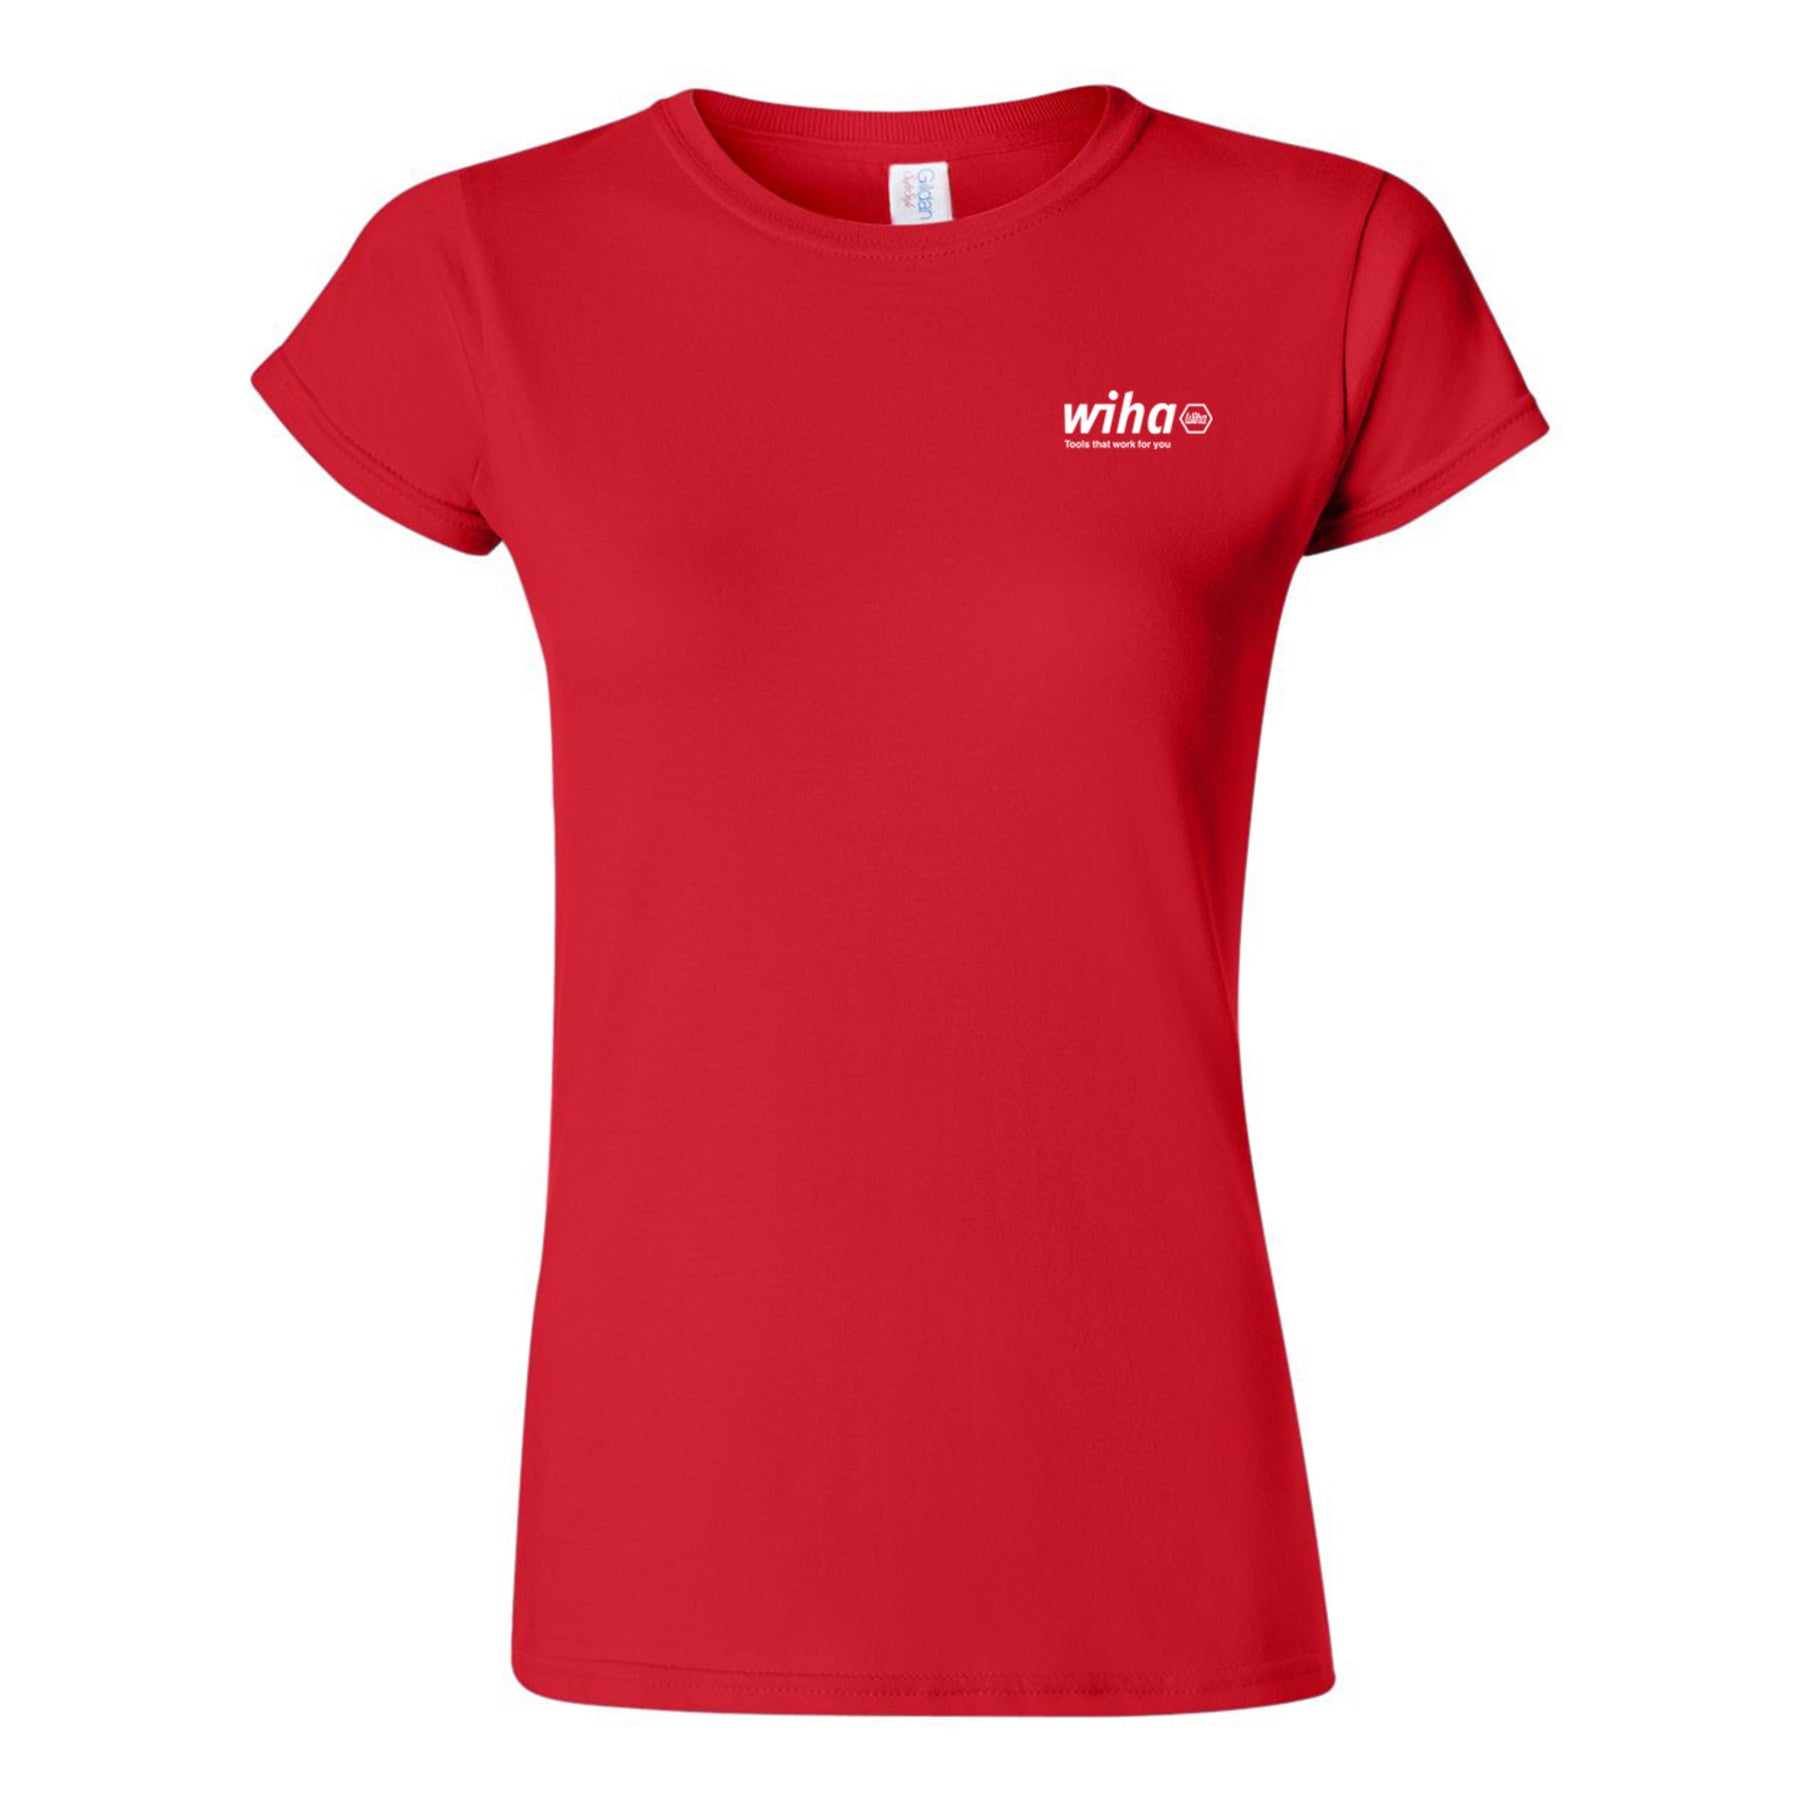 Wiha 91622 Wiha Women's T-shirt Red Large